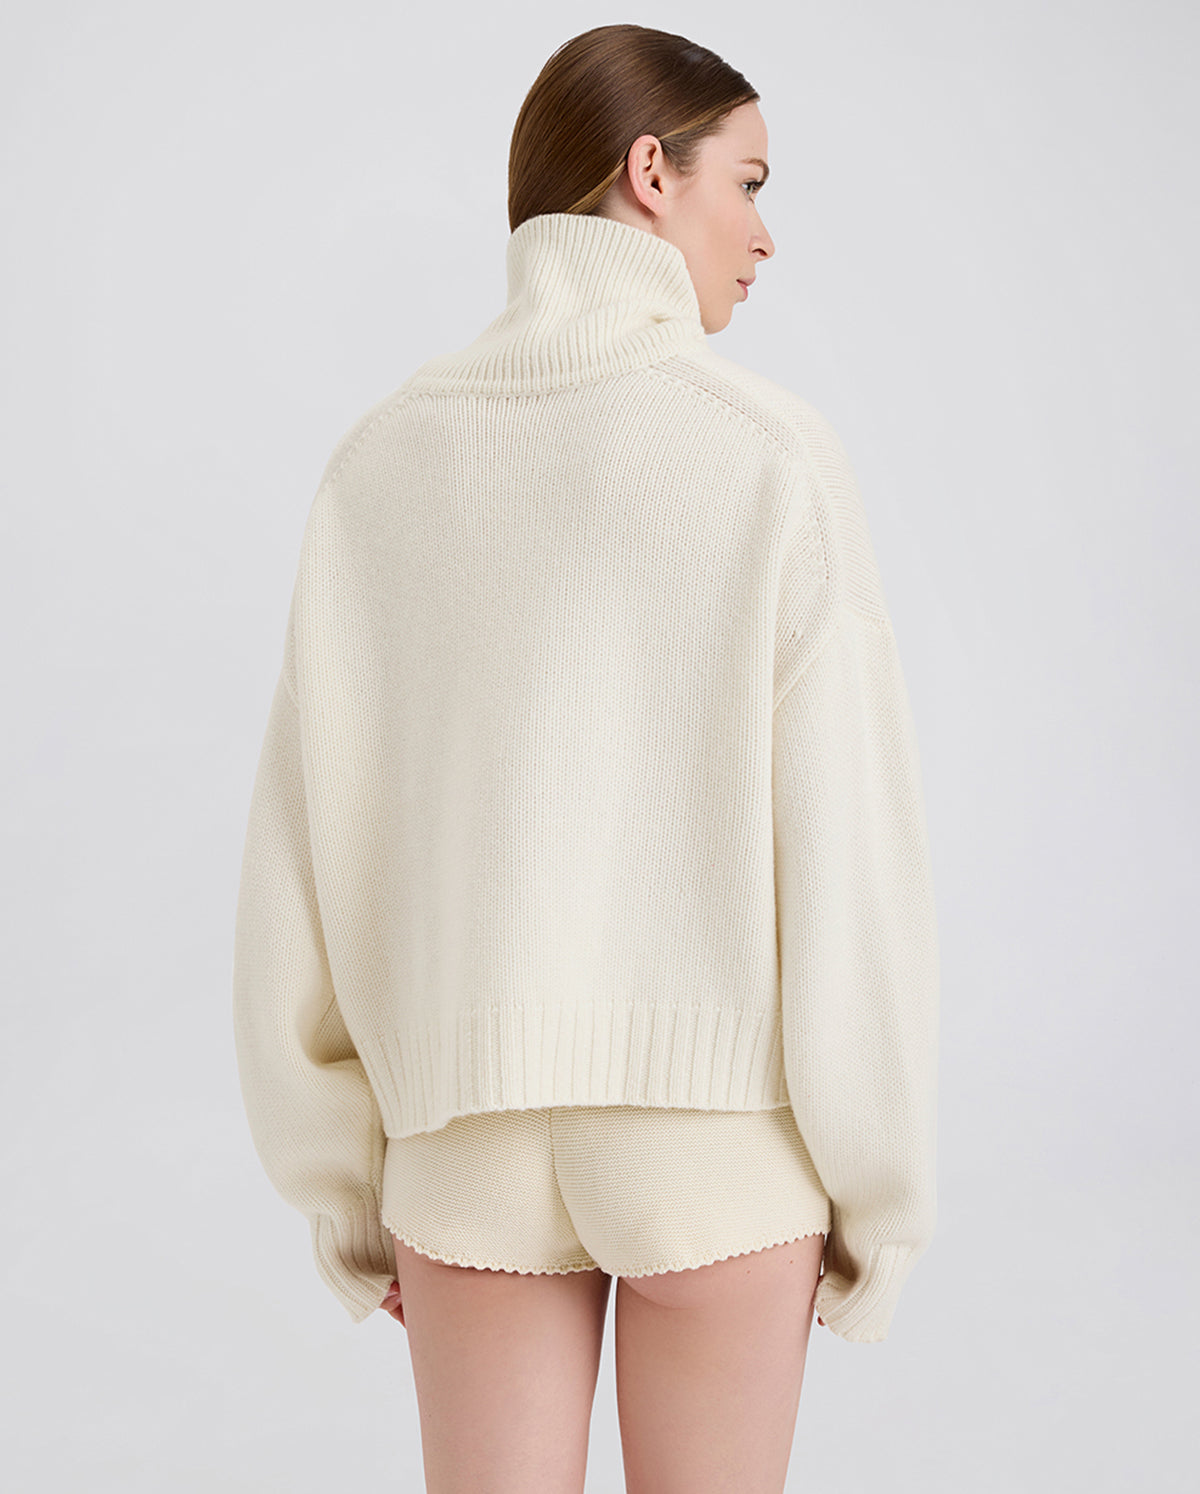 The Edrie Cashmere Sweater - Ecru